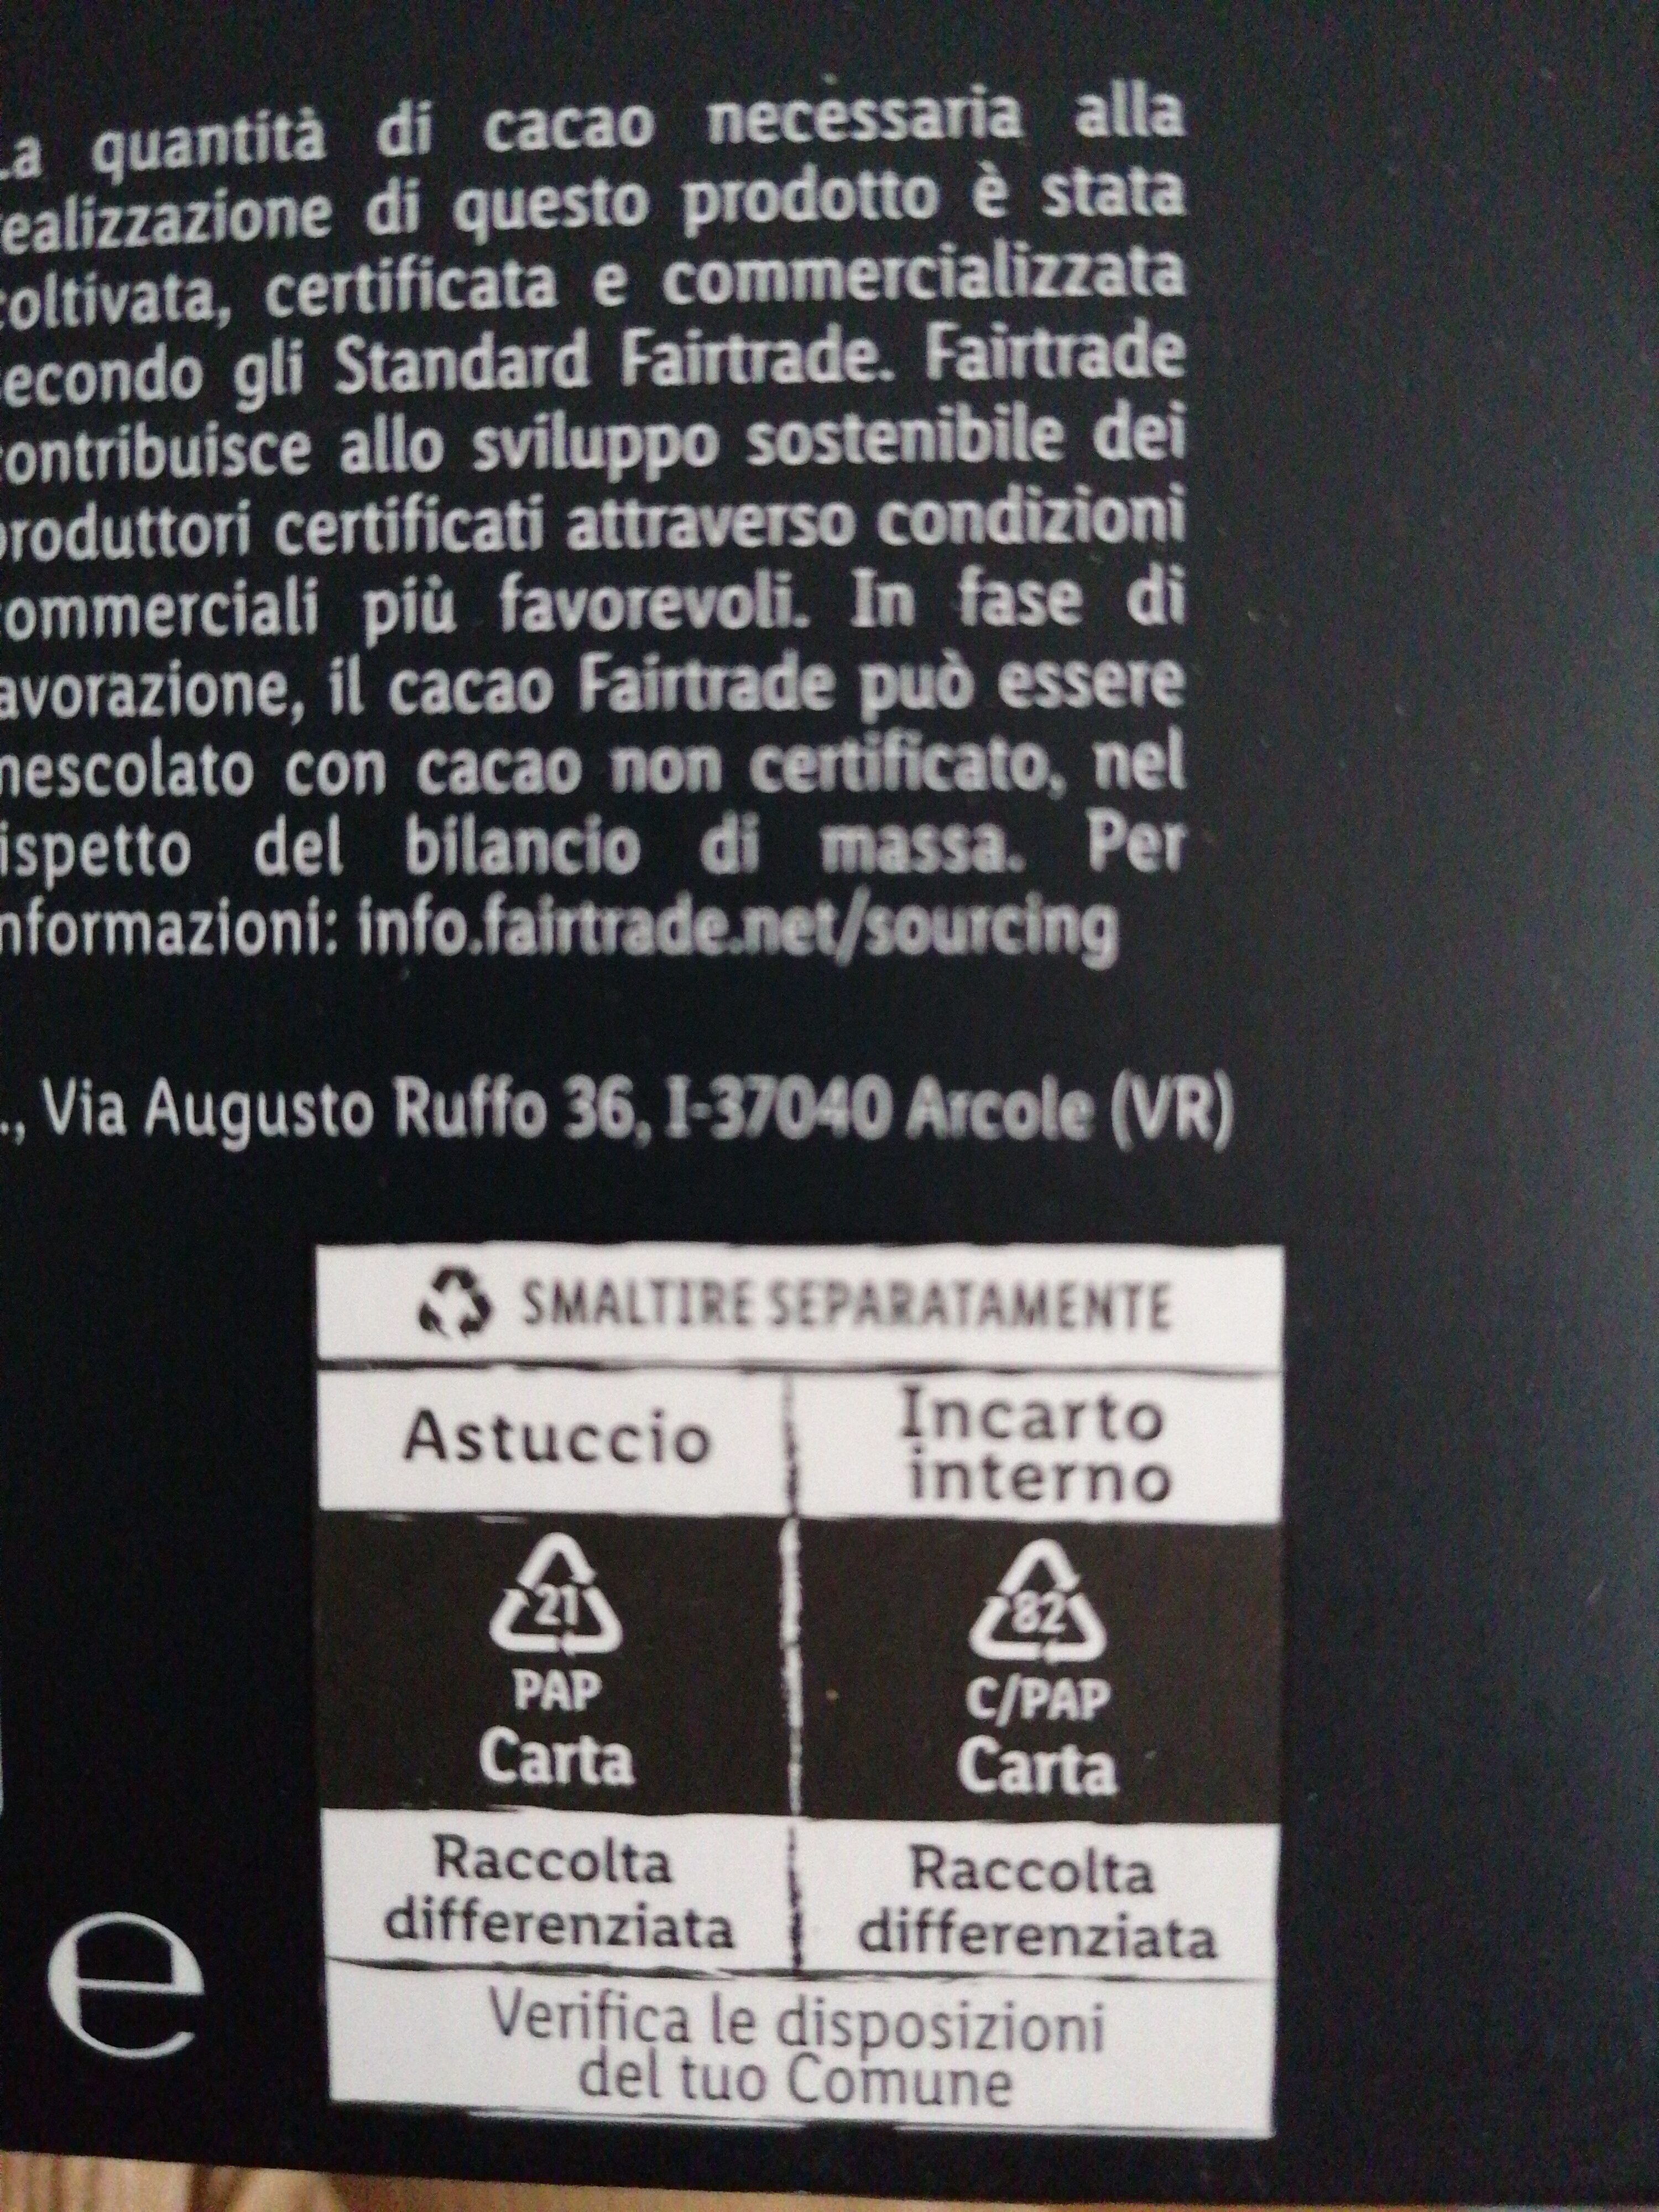 Chocolat noir - 85% cacao - Istruzioni per il riciclaggio e/o informazioni sull'imballaggio